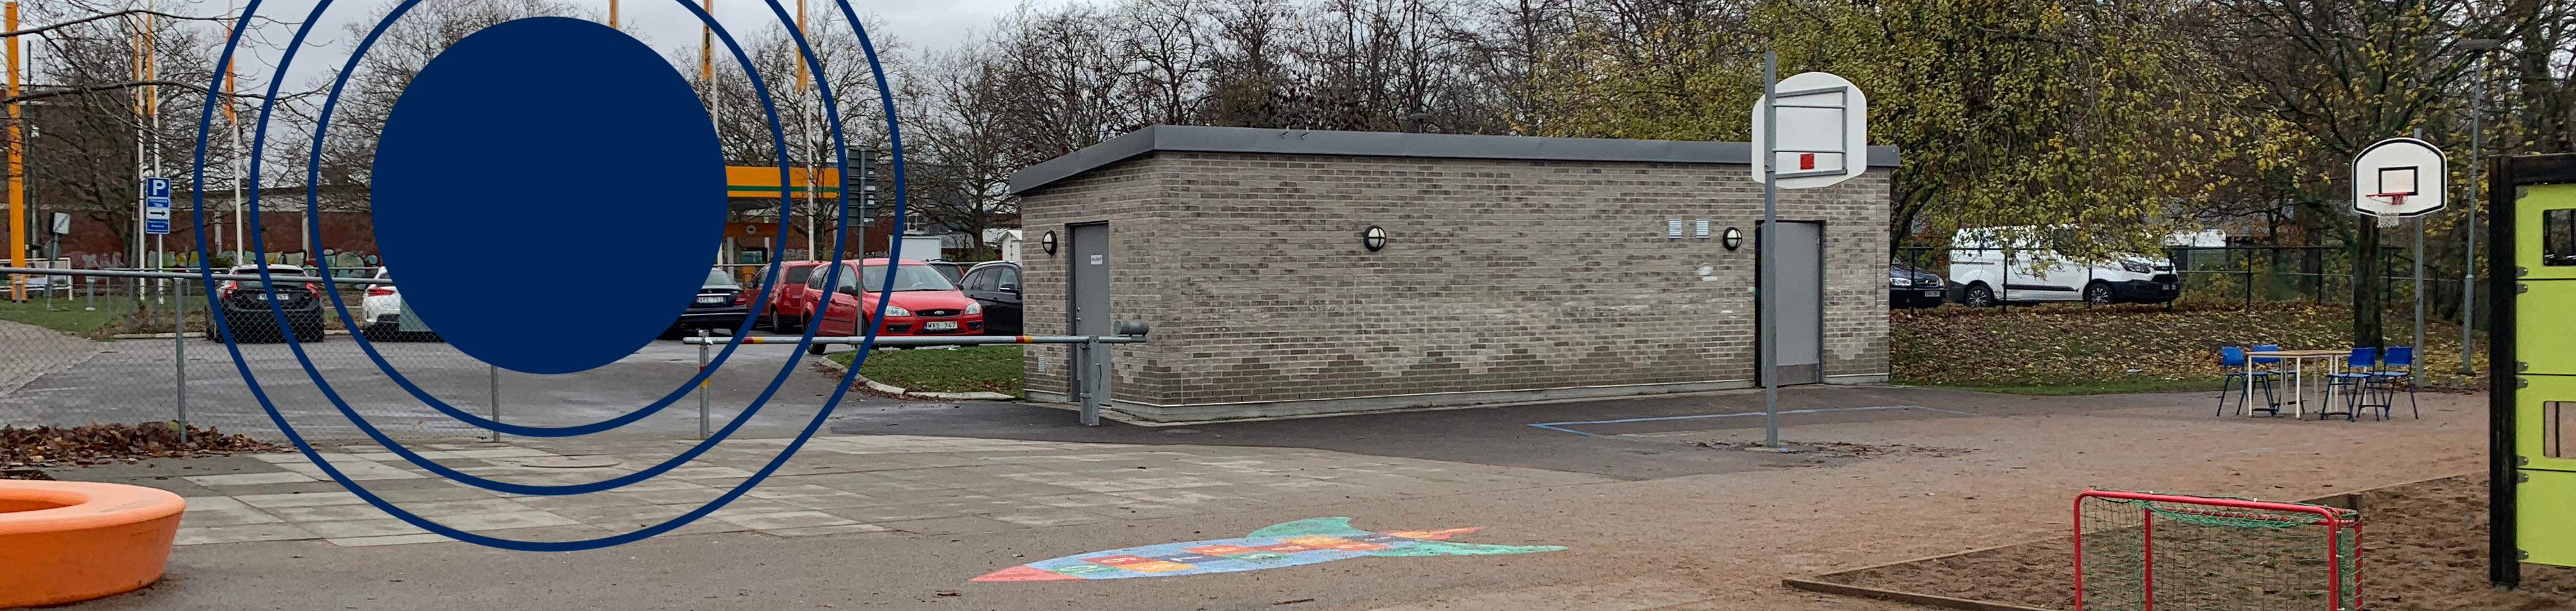 Miljöhus på grundskola i Malmö. Dekorativ blå ring.